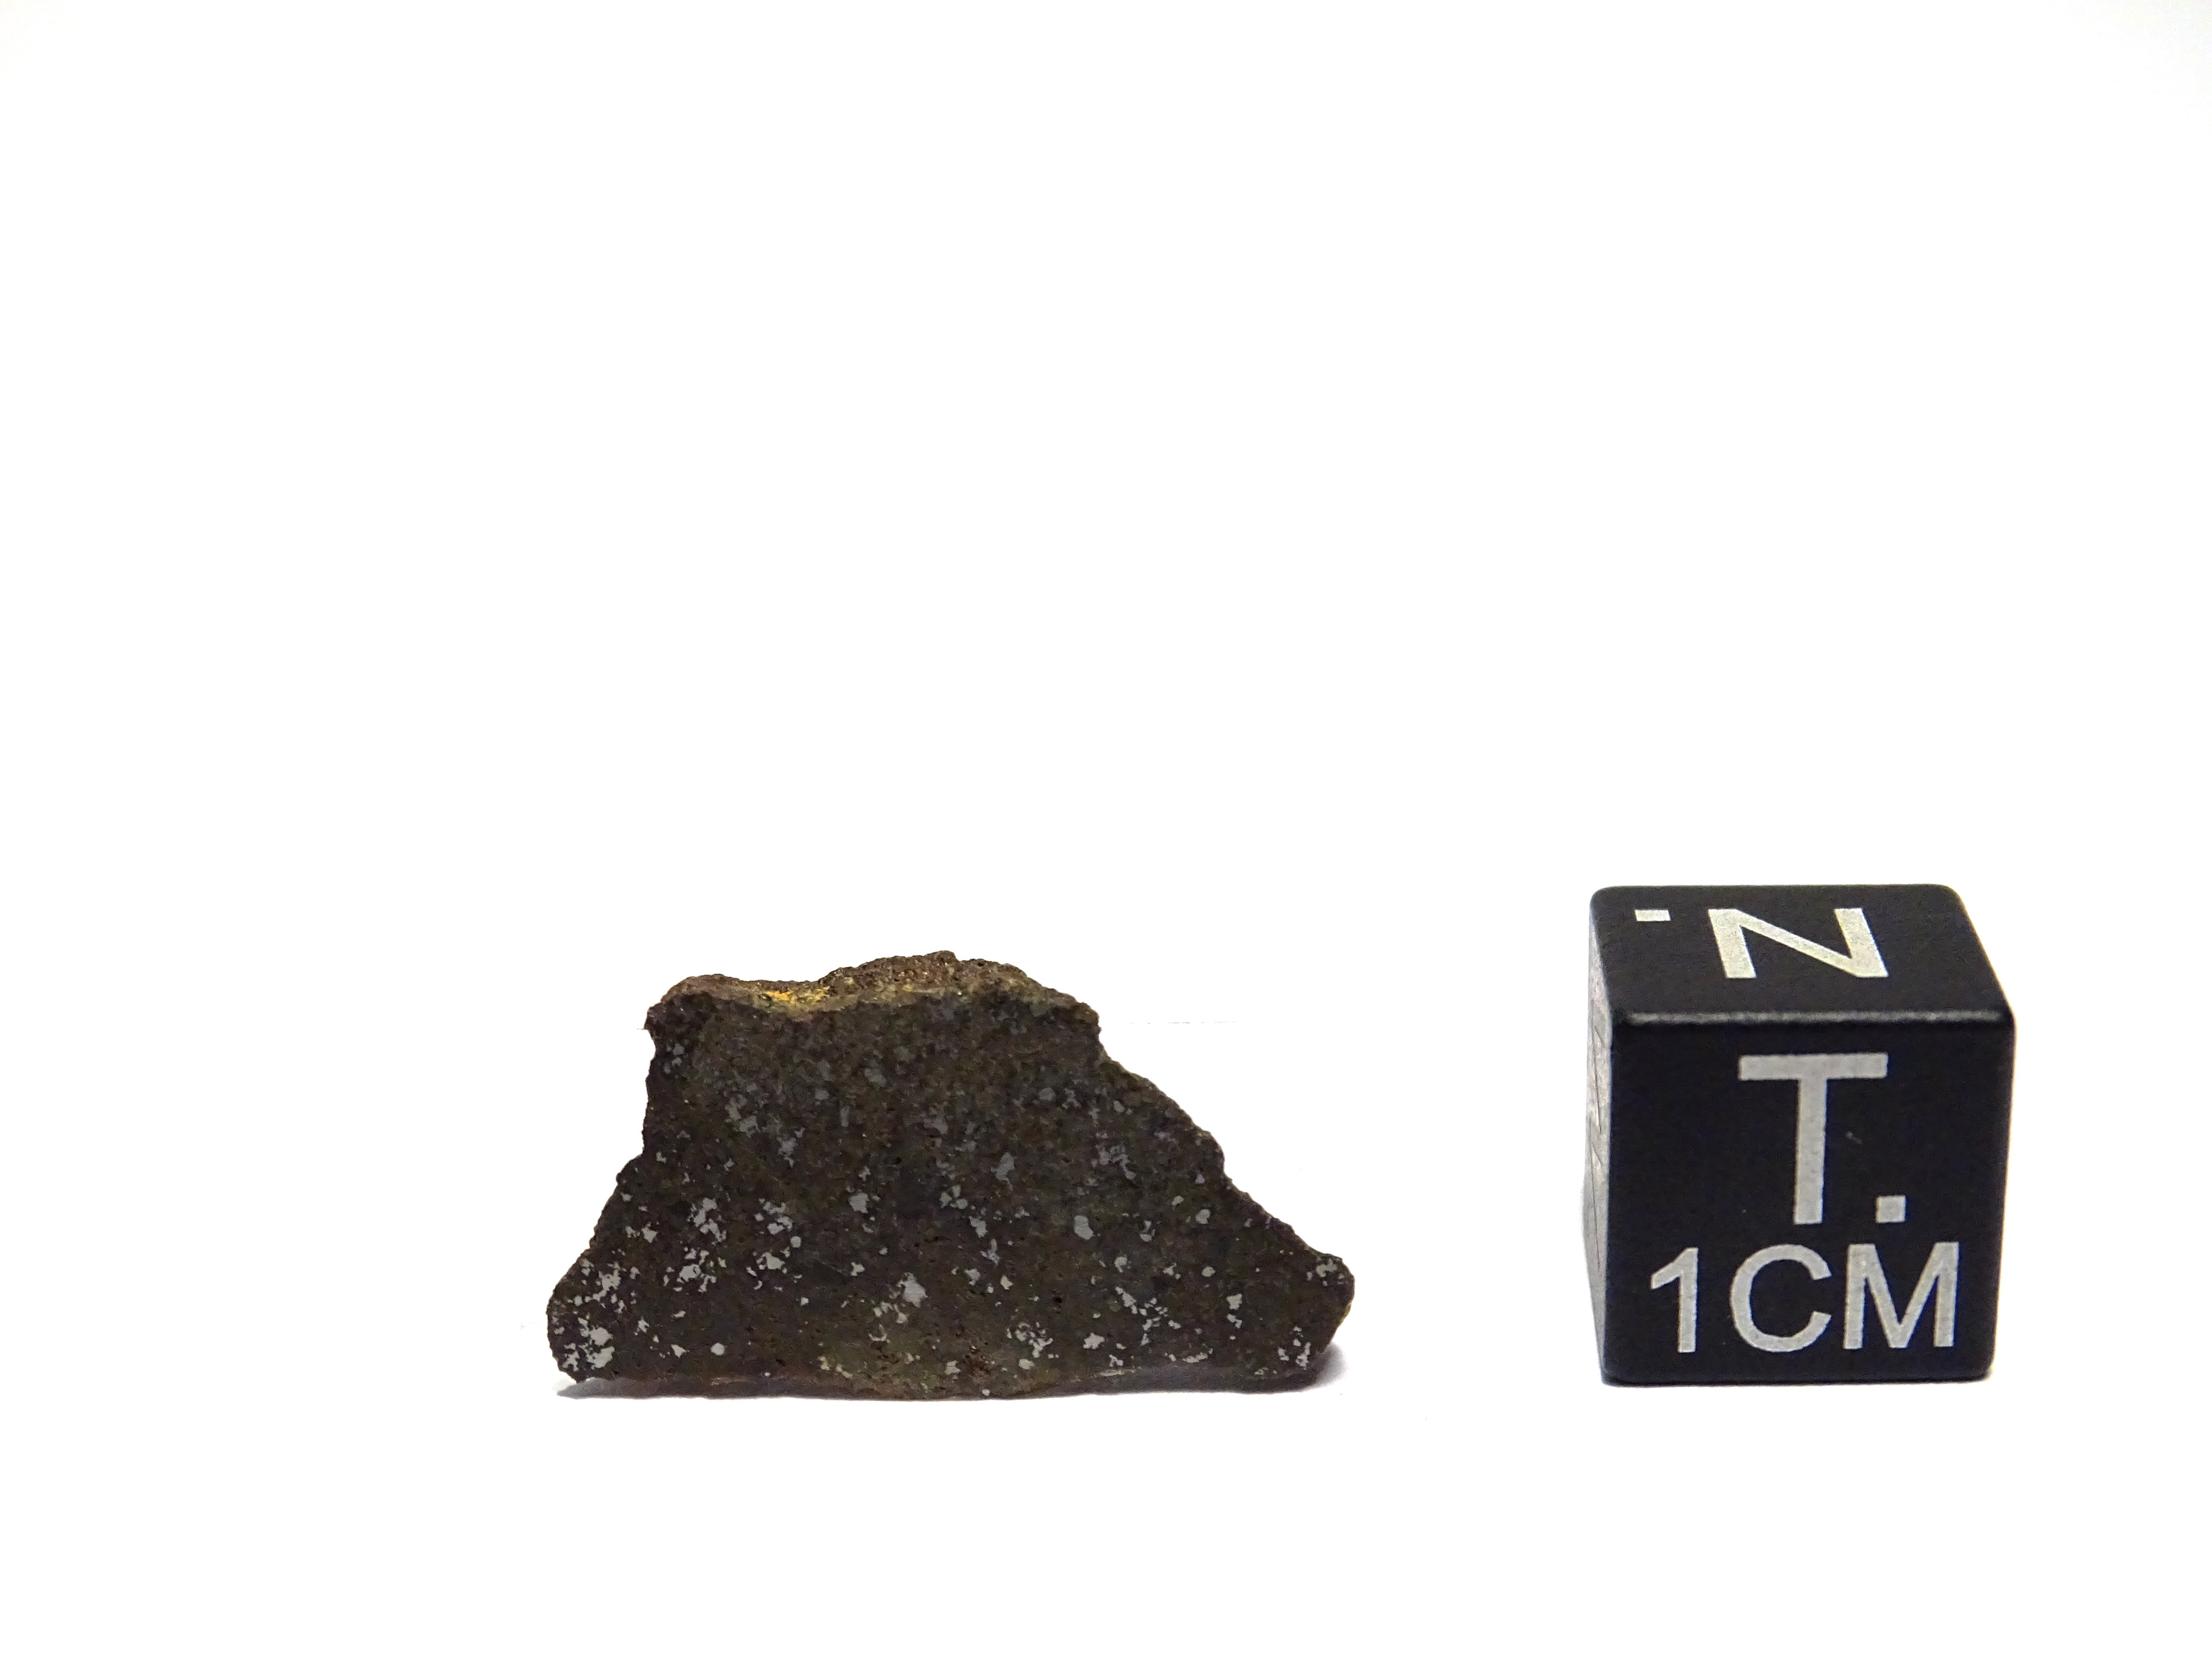 Meteorite/ Acapulcoite/ Northwest Africa 1054 (esemplare)